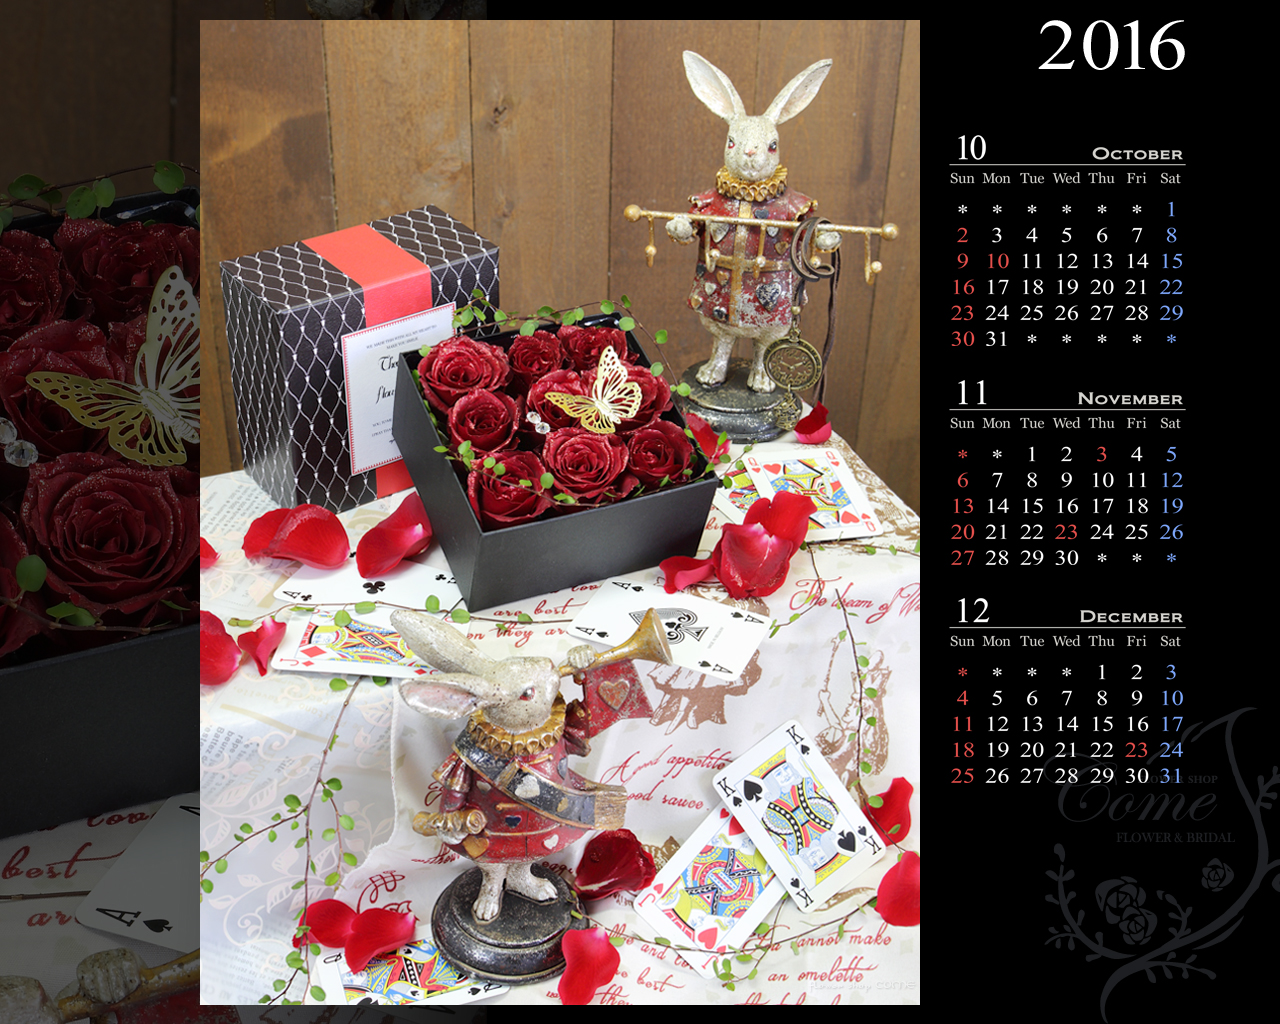 16年壁紙カレンダープレゼント 無料 花の写真を使った壁紙カレンダーを無料でダウンロード フラワーショップ花夢